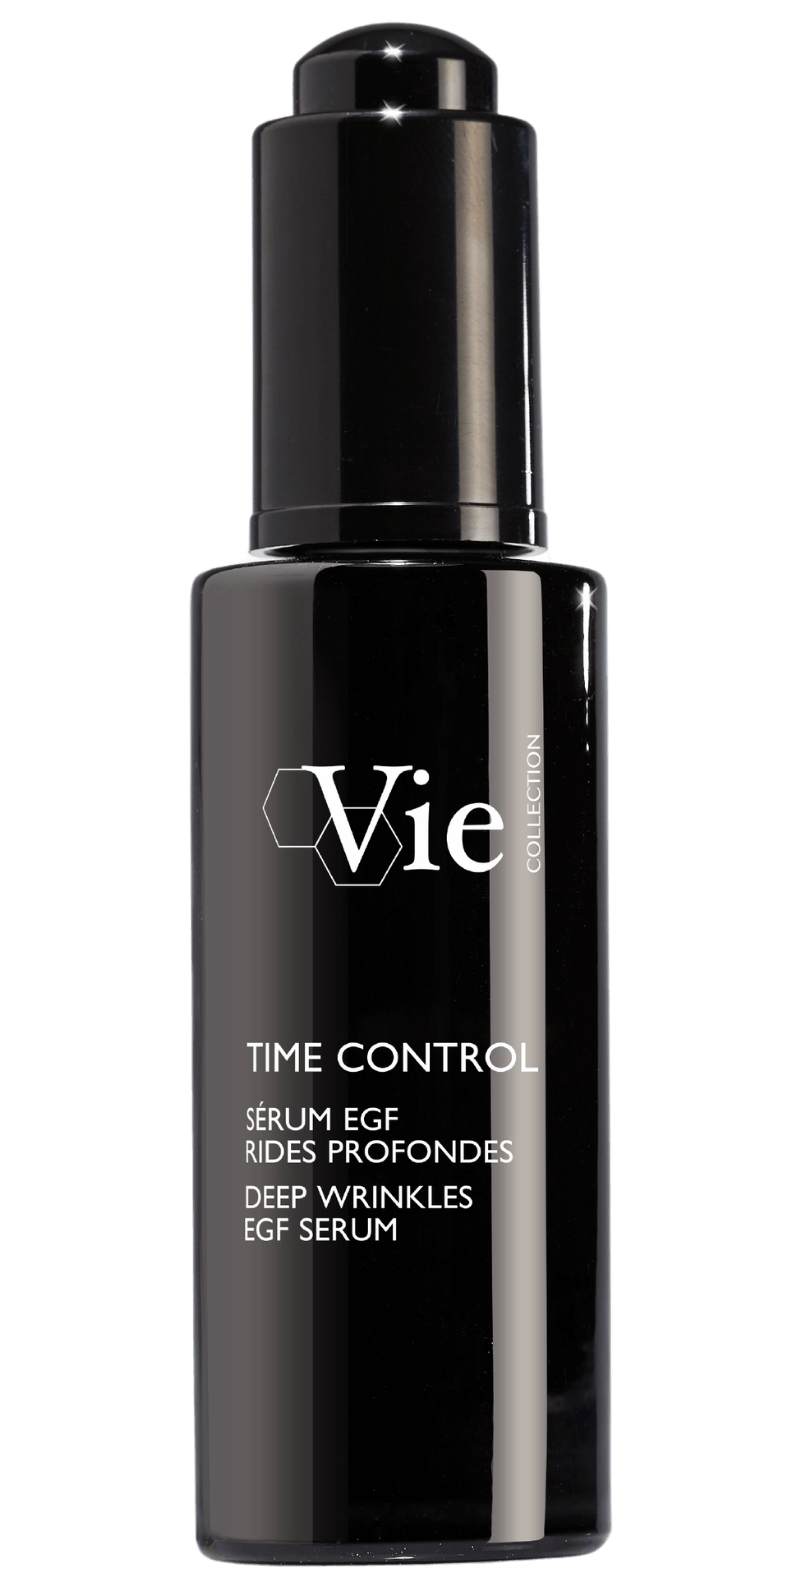 Vie Time Control Deep Wrinkles EGF Serum